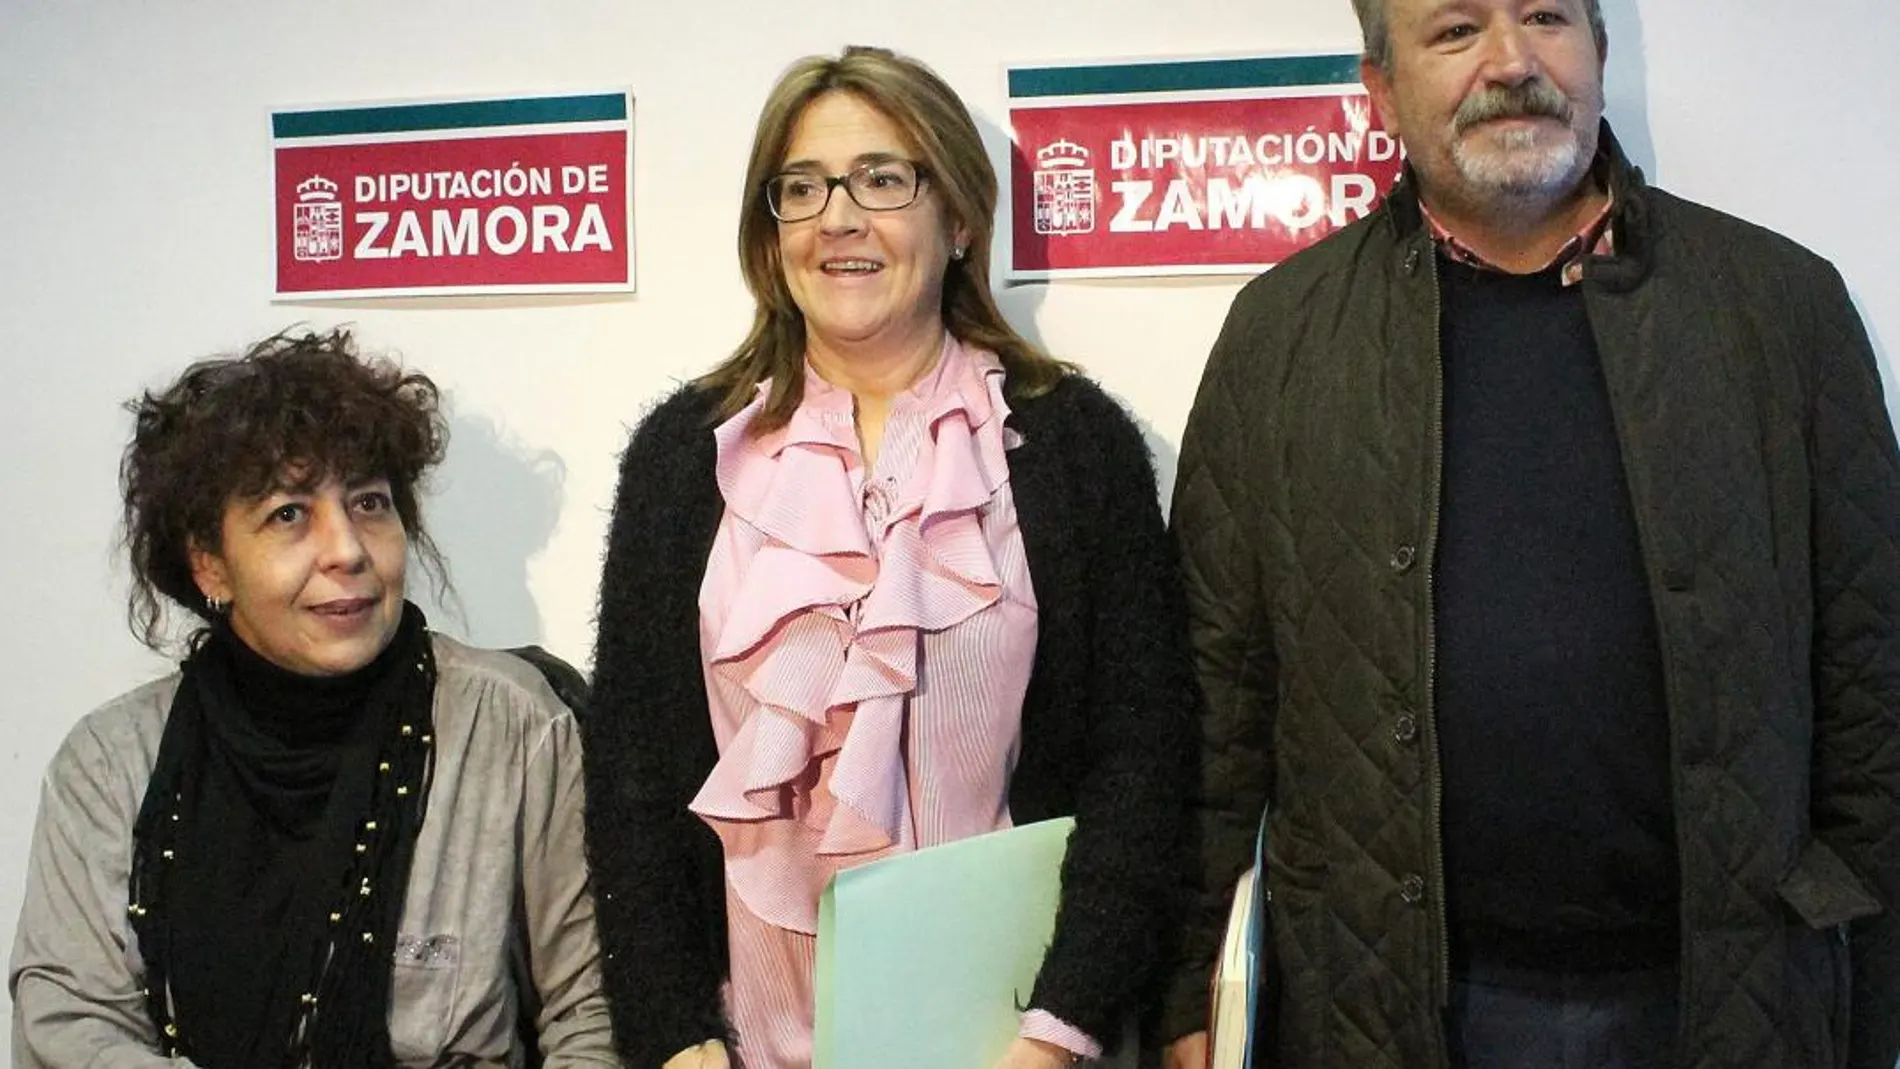 La presidenta de la Diputación de Zamora, Mayte Martín, junto a Rodríguez y Nefti